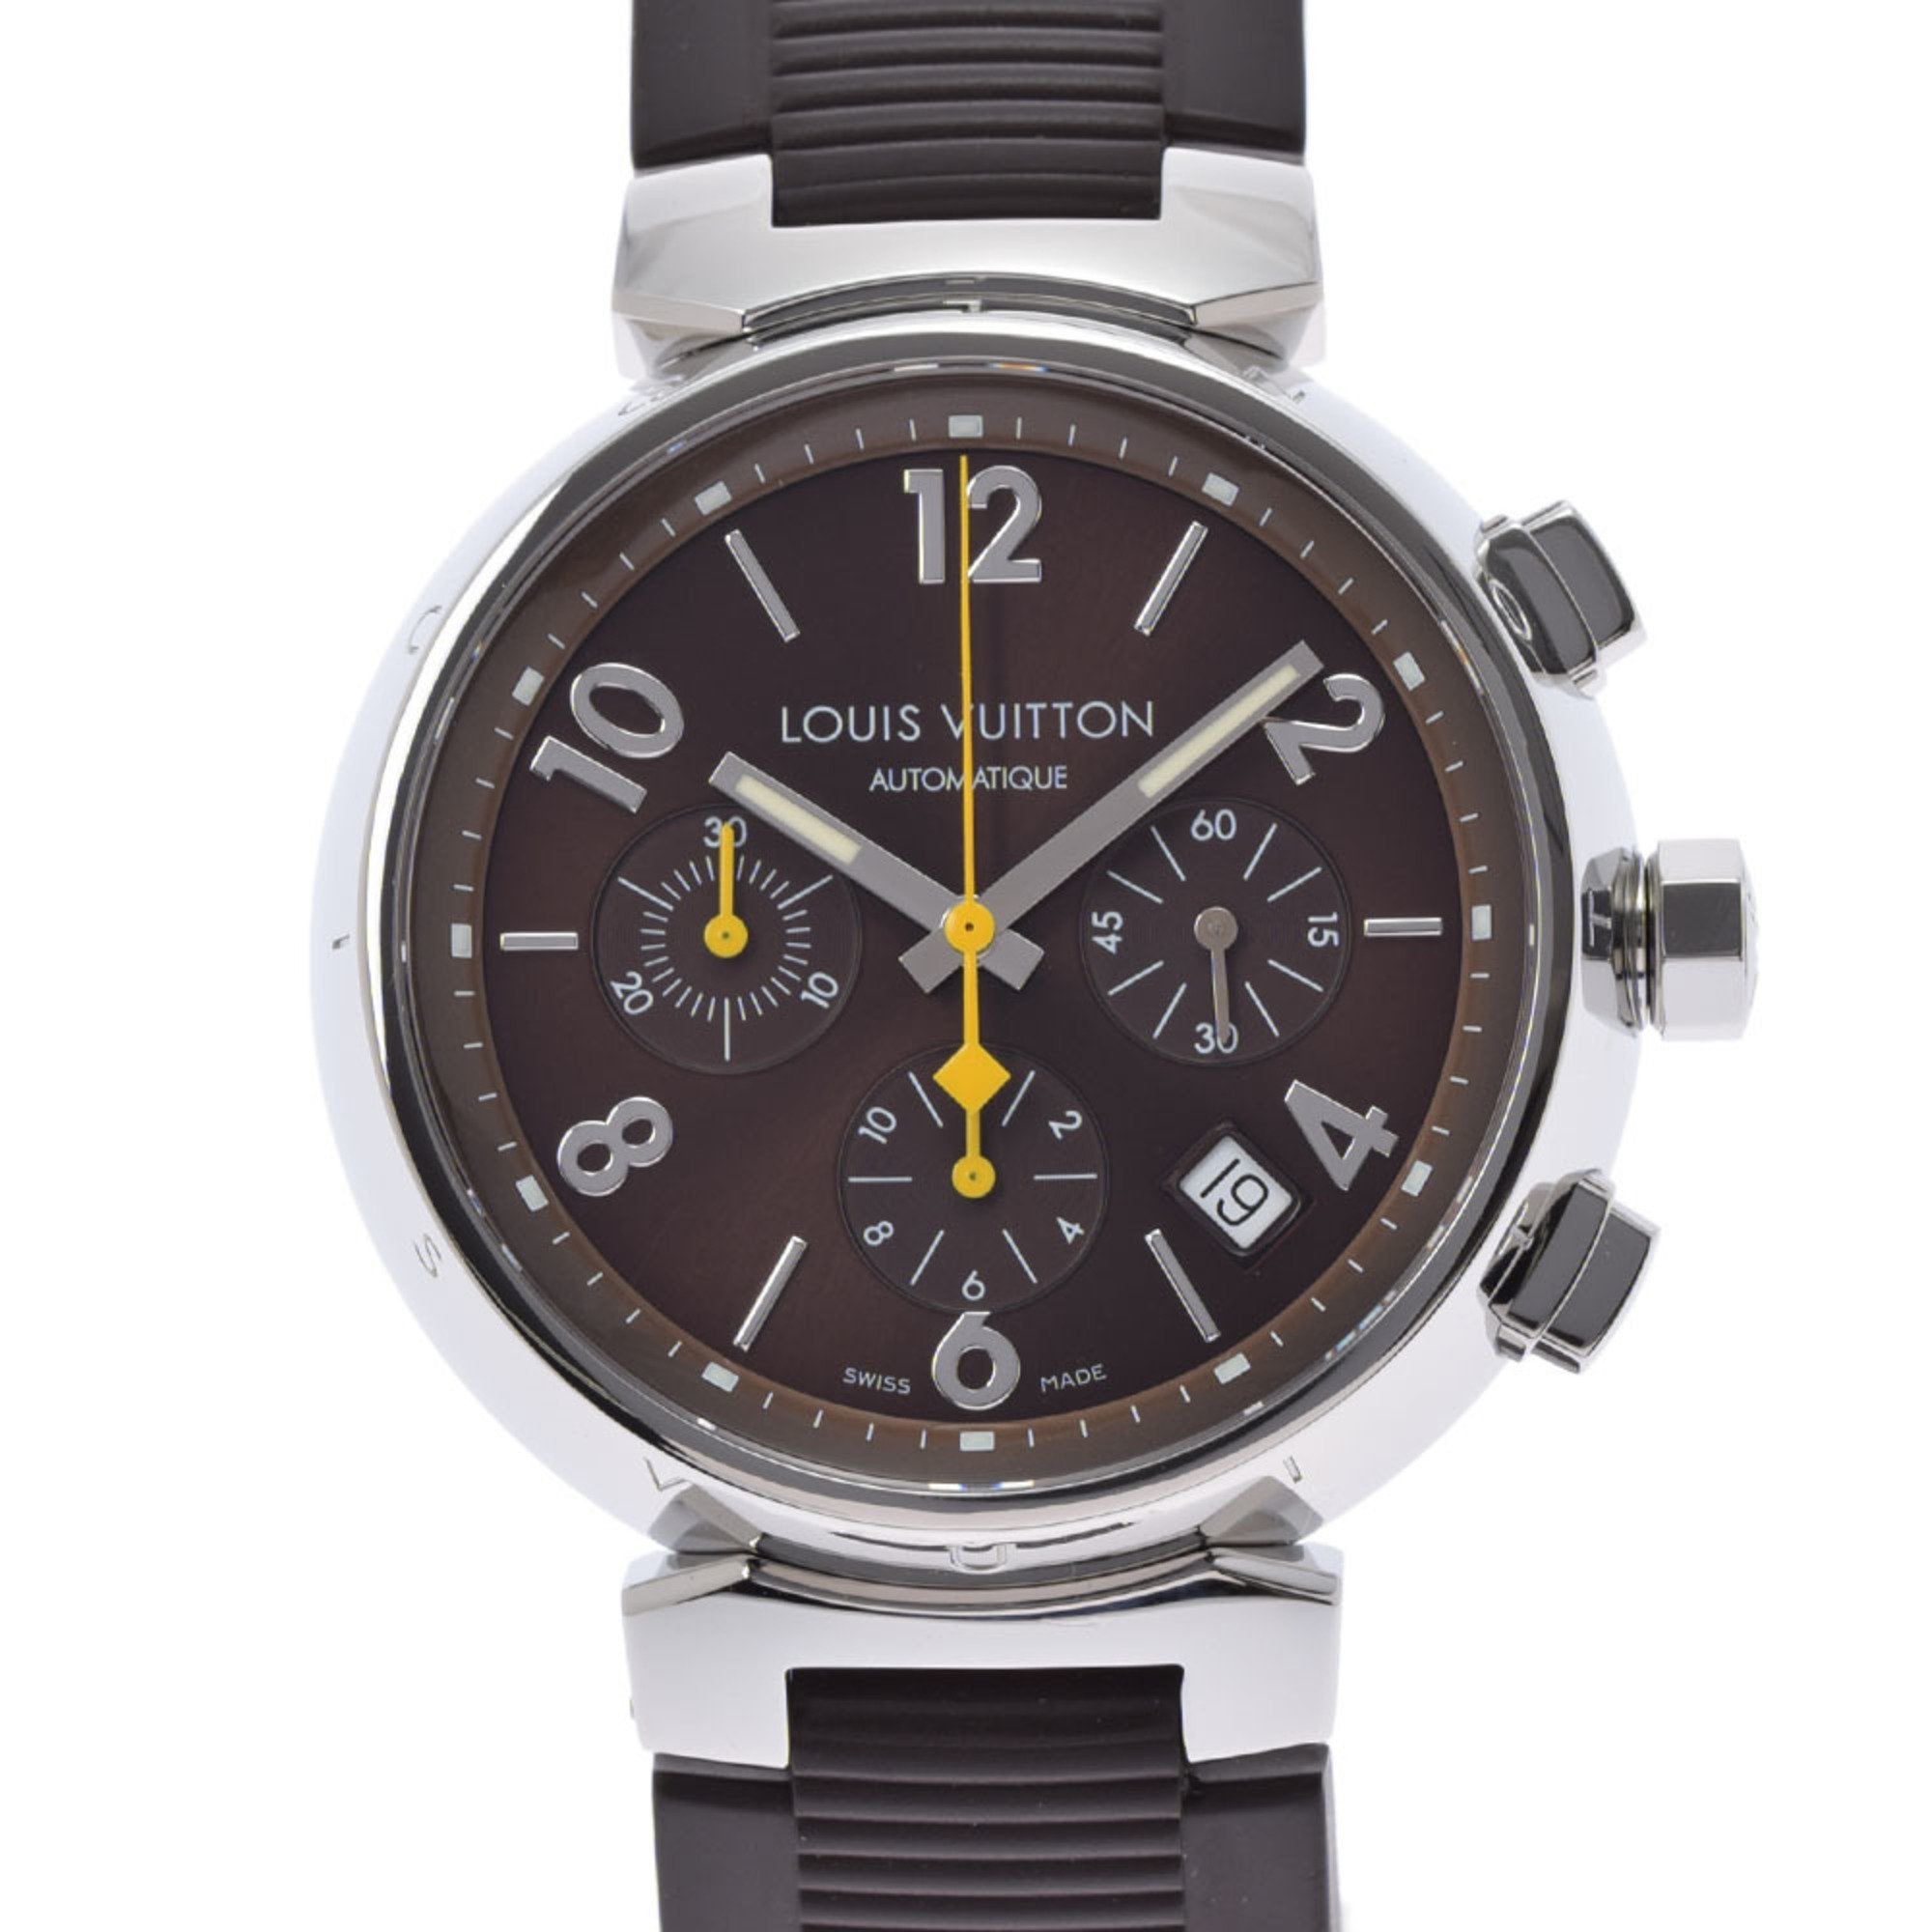 Louis Vuitton Tambour Chrono Q1121 Men's Ss / Rubber Watch Quartz